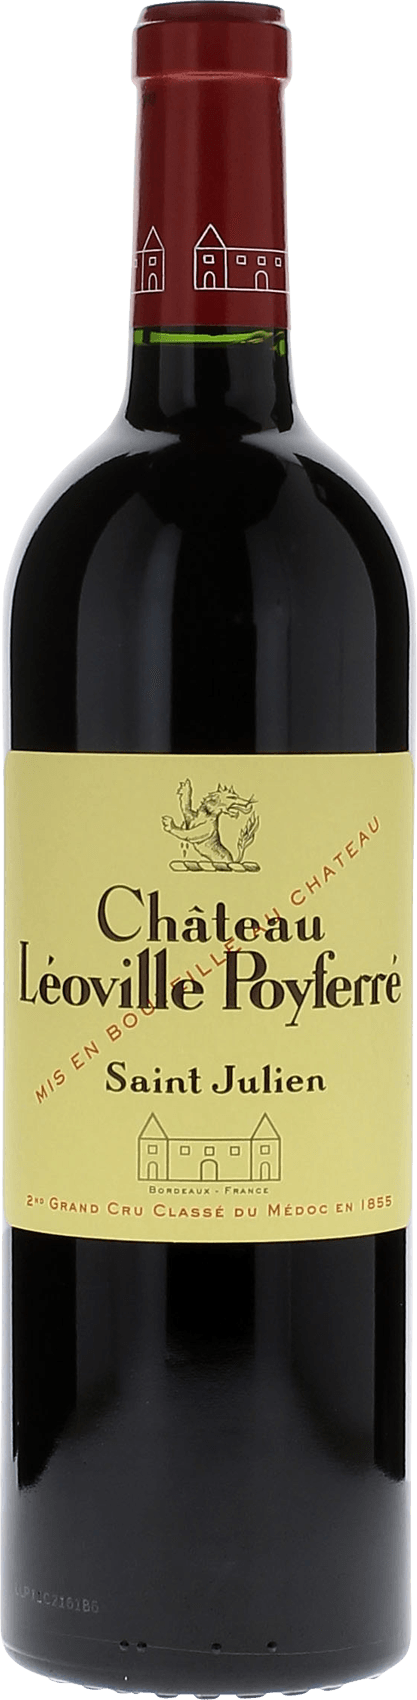 Leoville poyferre 1992  Saint-Julien, Bordeaux rouge